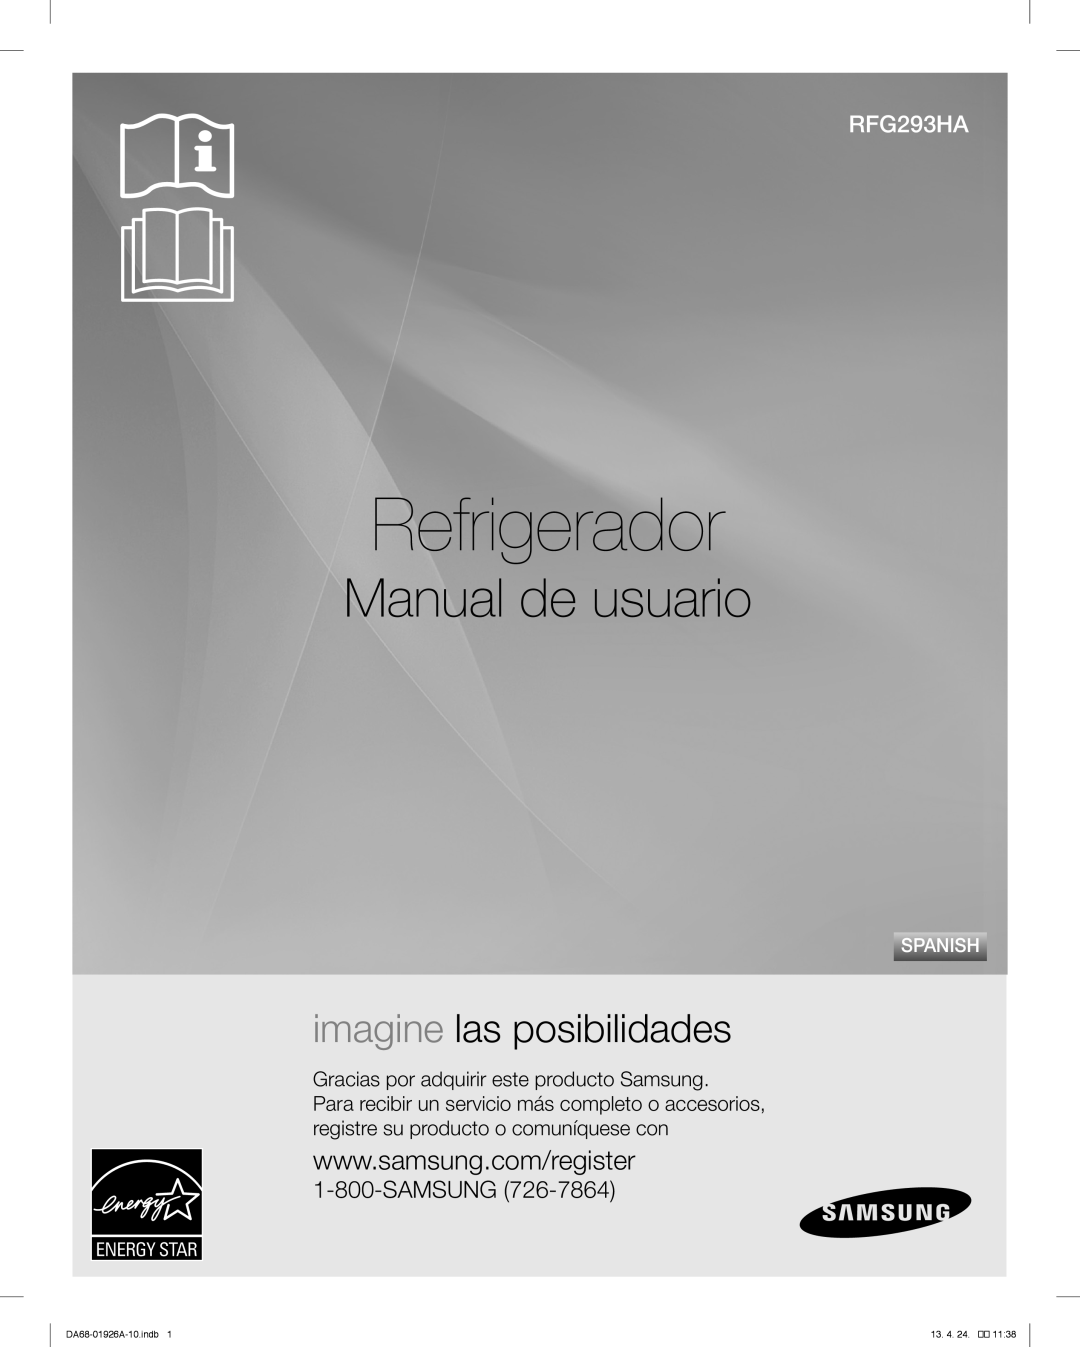 Samsung RFG293HAWP Refrigerador, Manual de usuario, imagine las posibilidades, Solución de problemas, Samsung, Spanish 